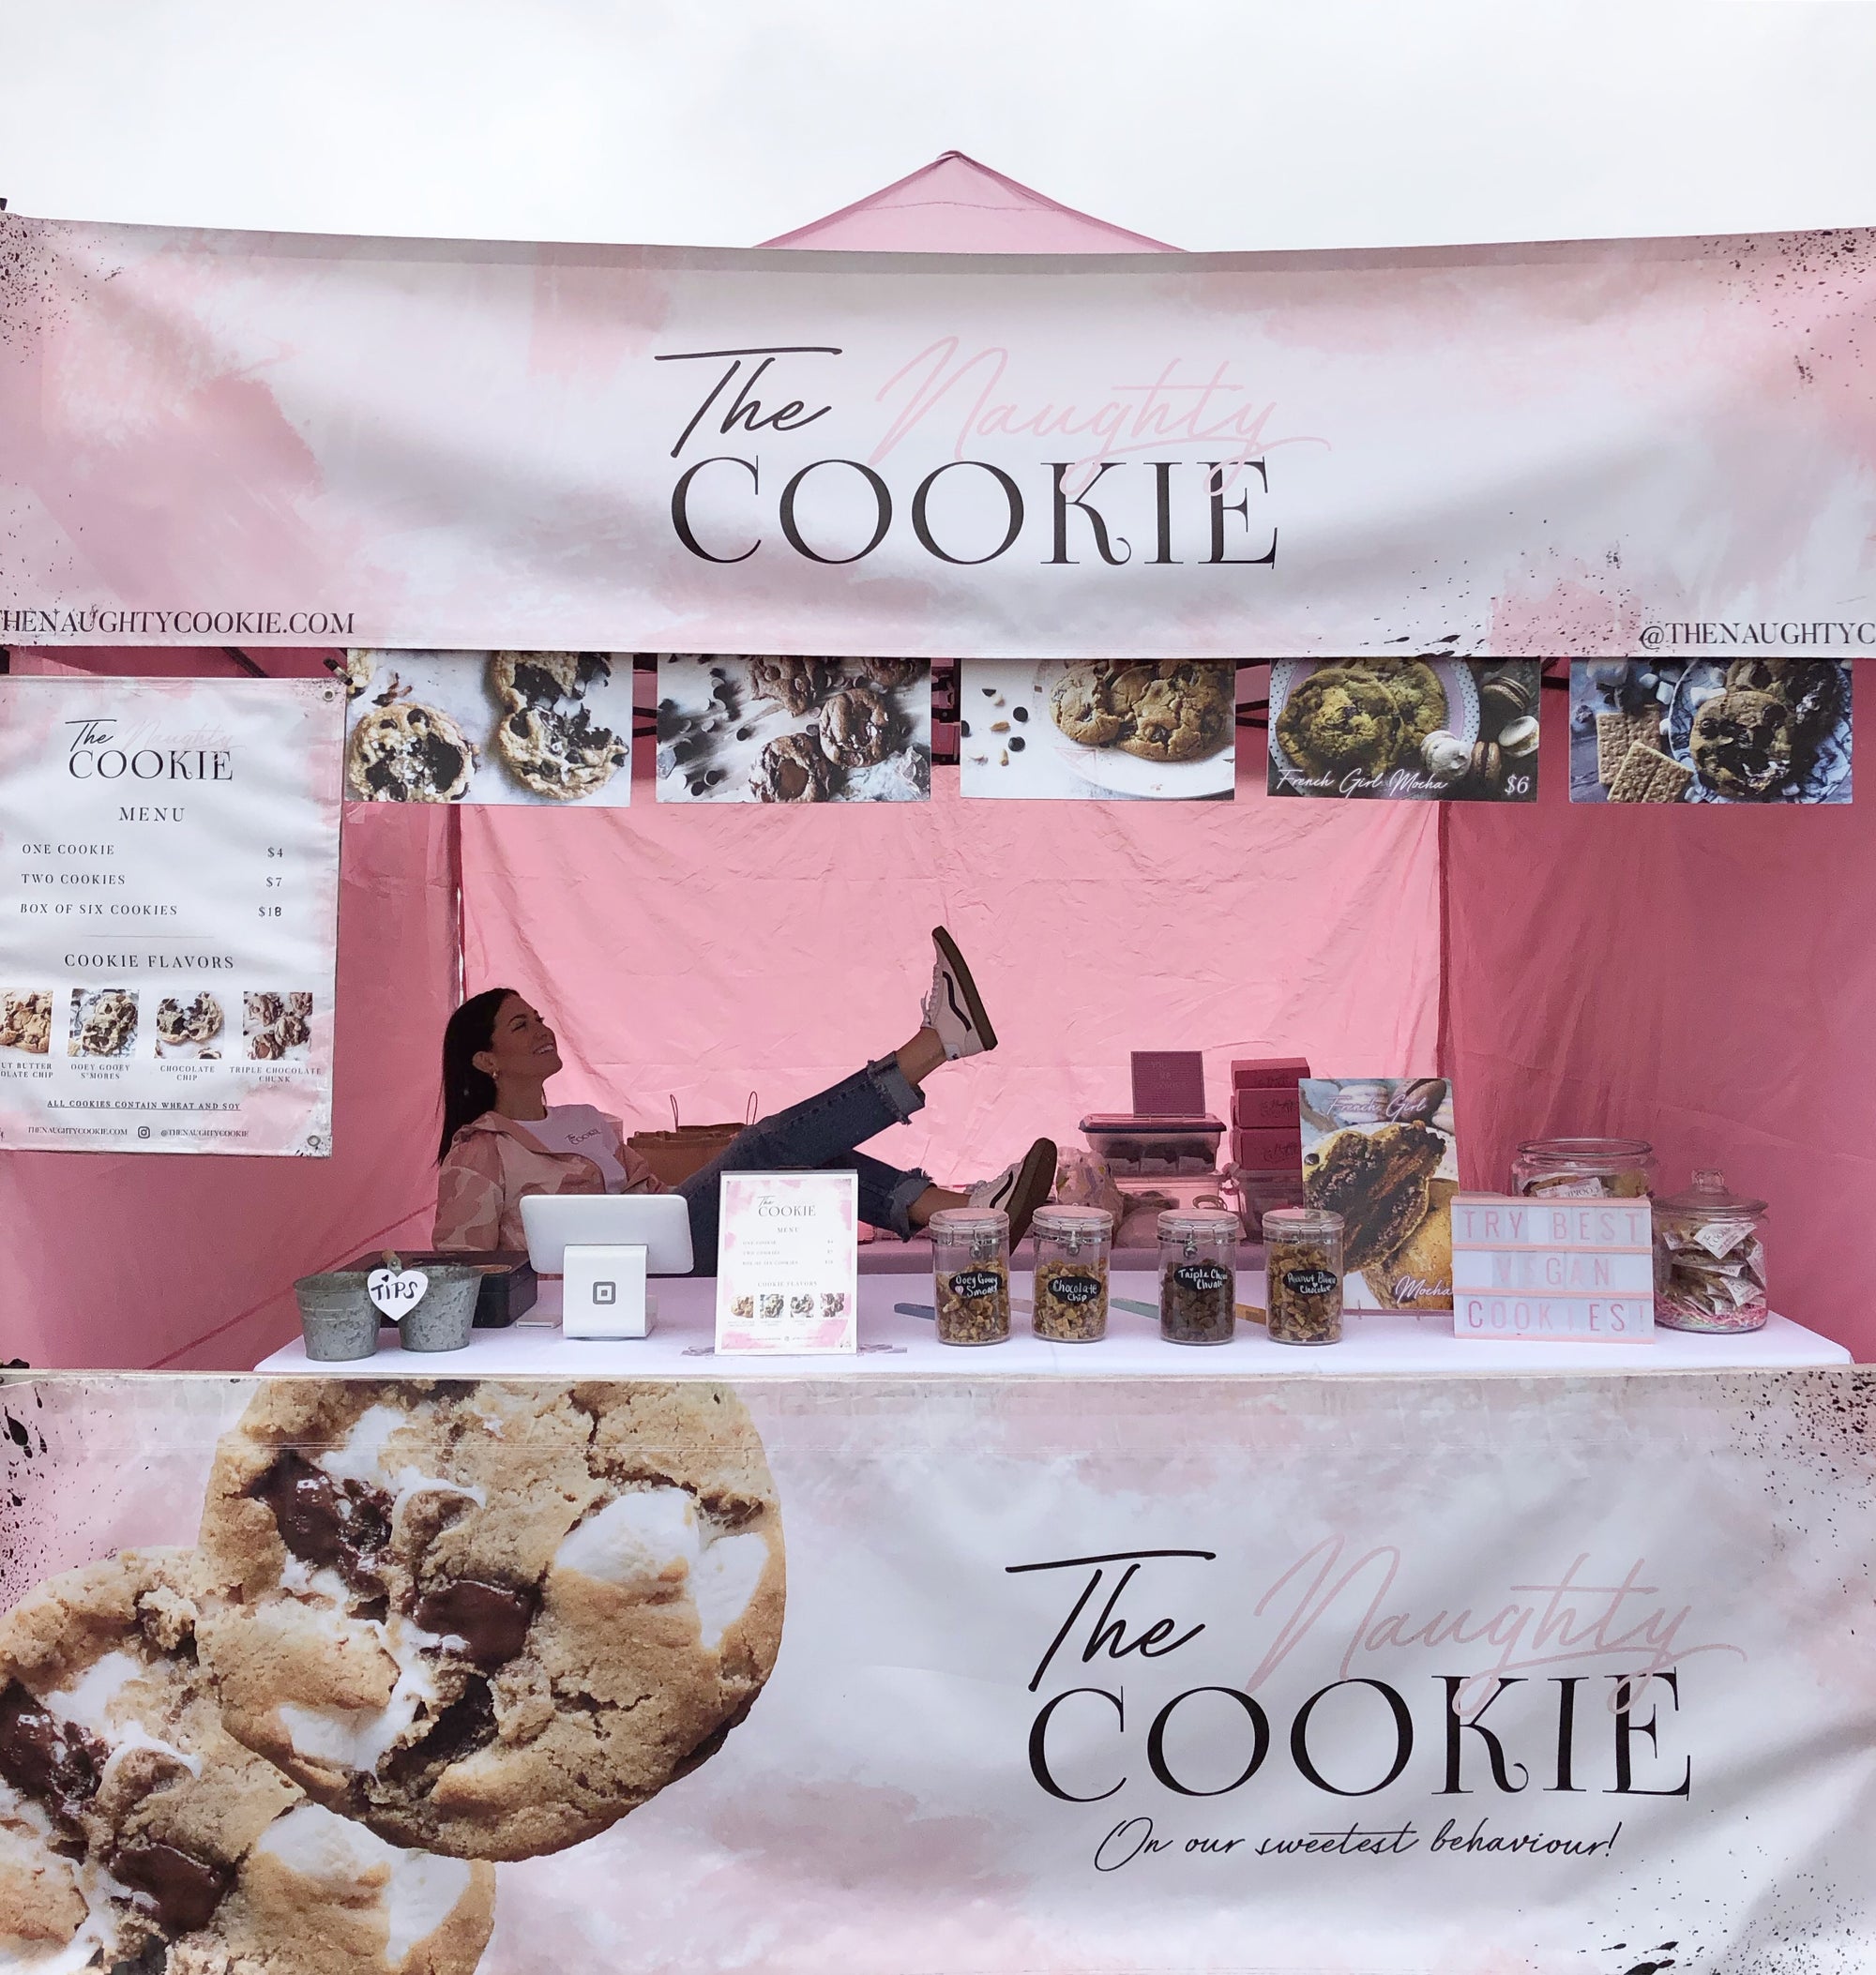 The Naughty Cookie pop-up booth at Vegan Street Fair / Vegan Exchange / Los Angeles, California